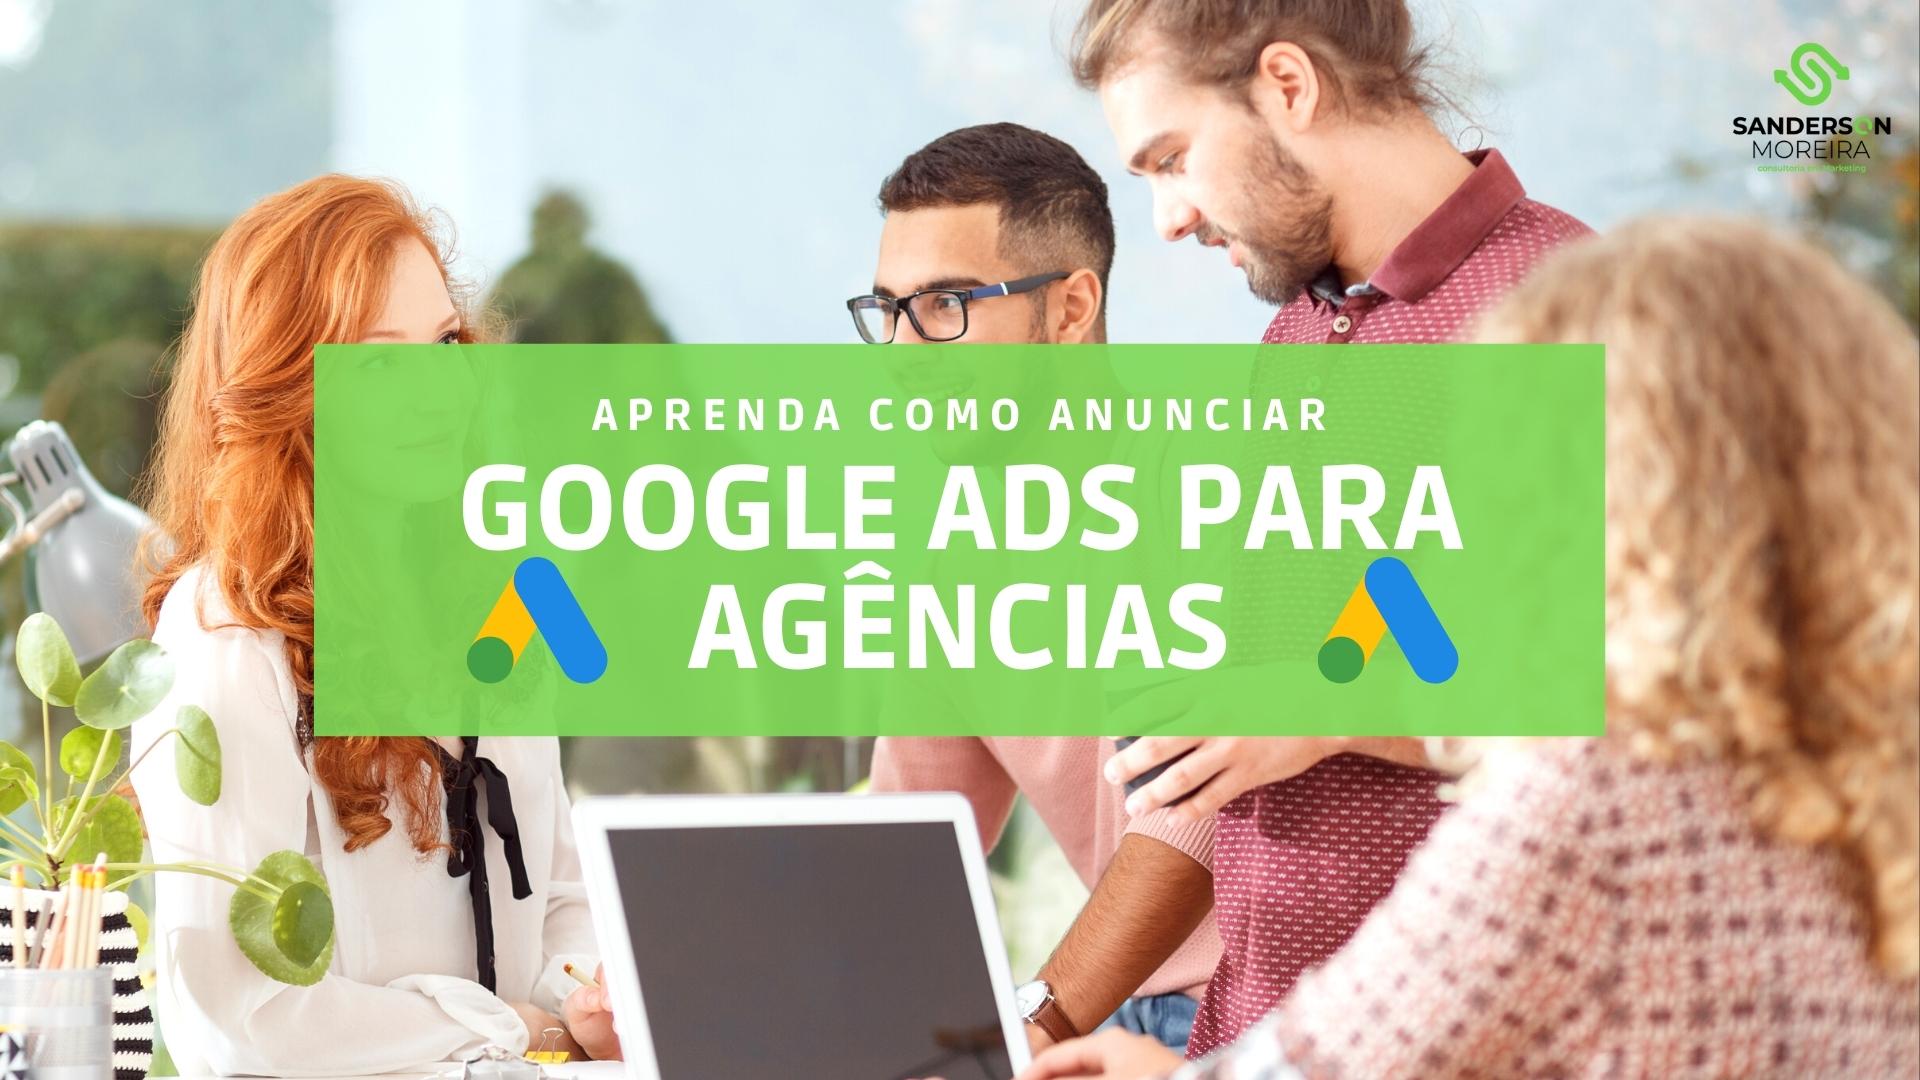 Google ads para agências